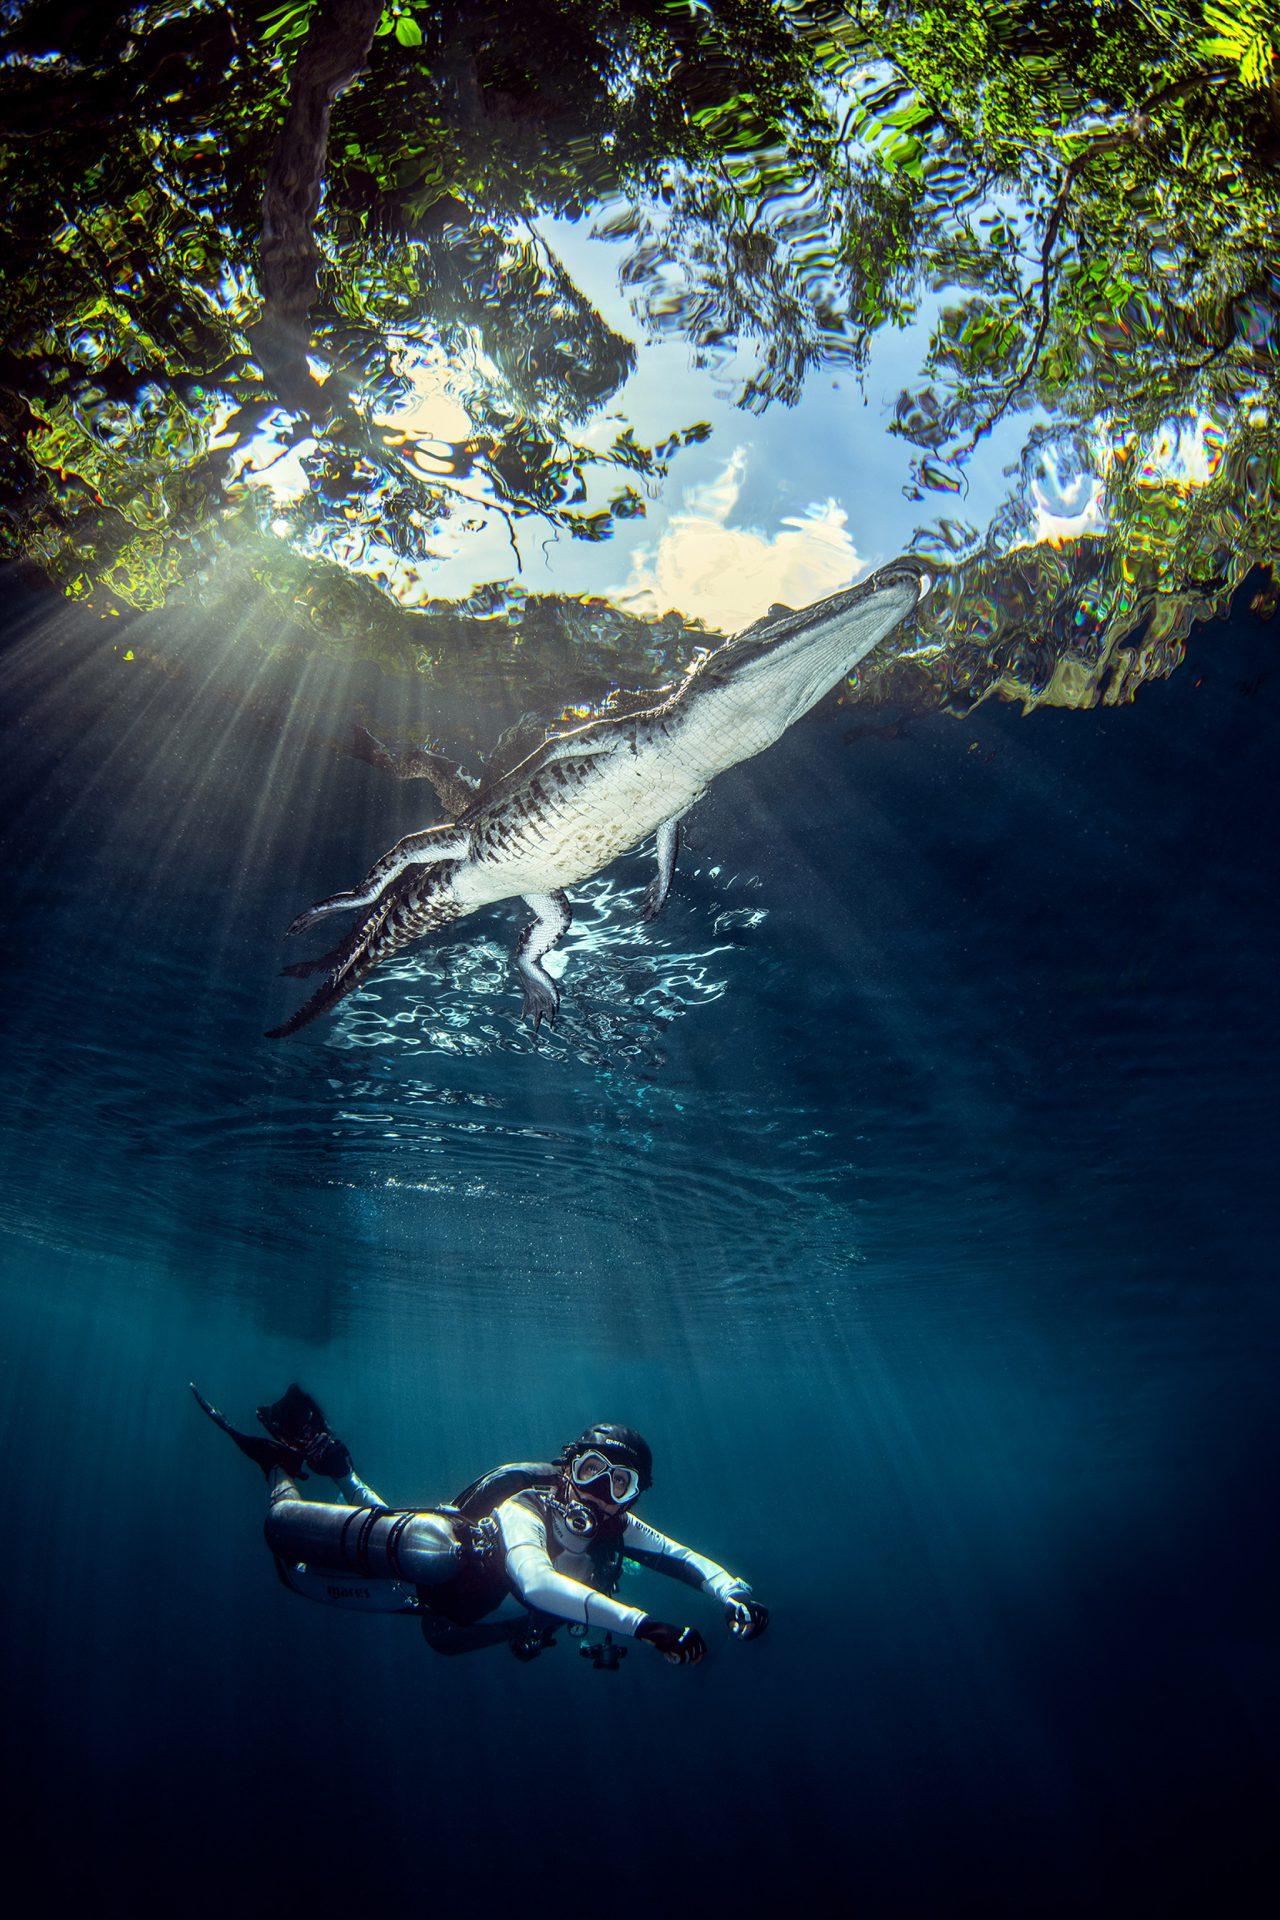 Cette photo du Croate Damir Zurub a été prise dans le cenote Angelita à Tulum, au Mexique. La photo a été prise au moment où le crocodile a plongé dans le cenote. L’idée était de capturer l’admiration d’un plongeur partageant l’eau avec un tel animal. [Exposub - Damir Zurub]